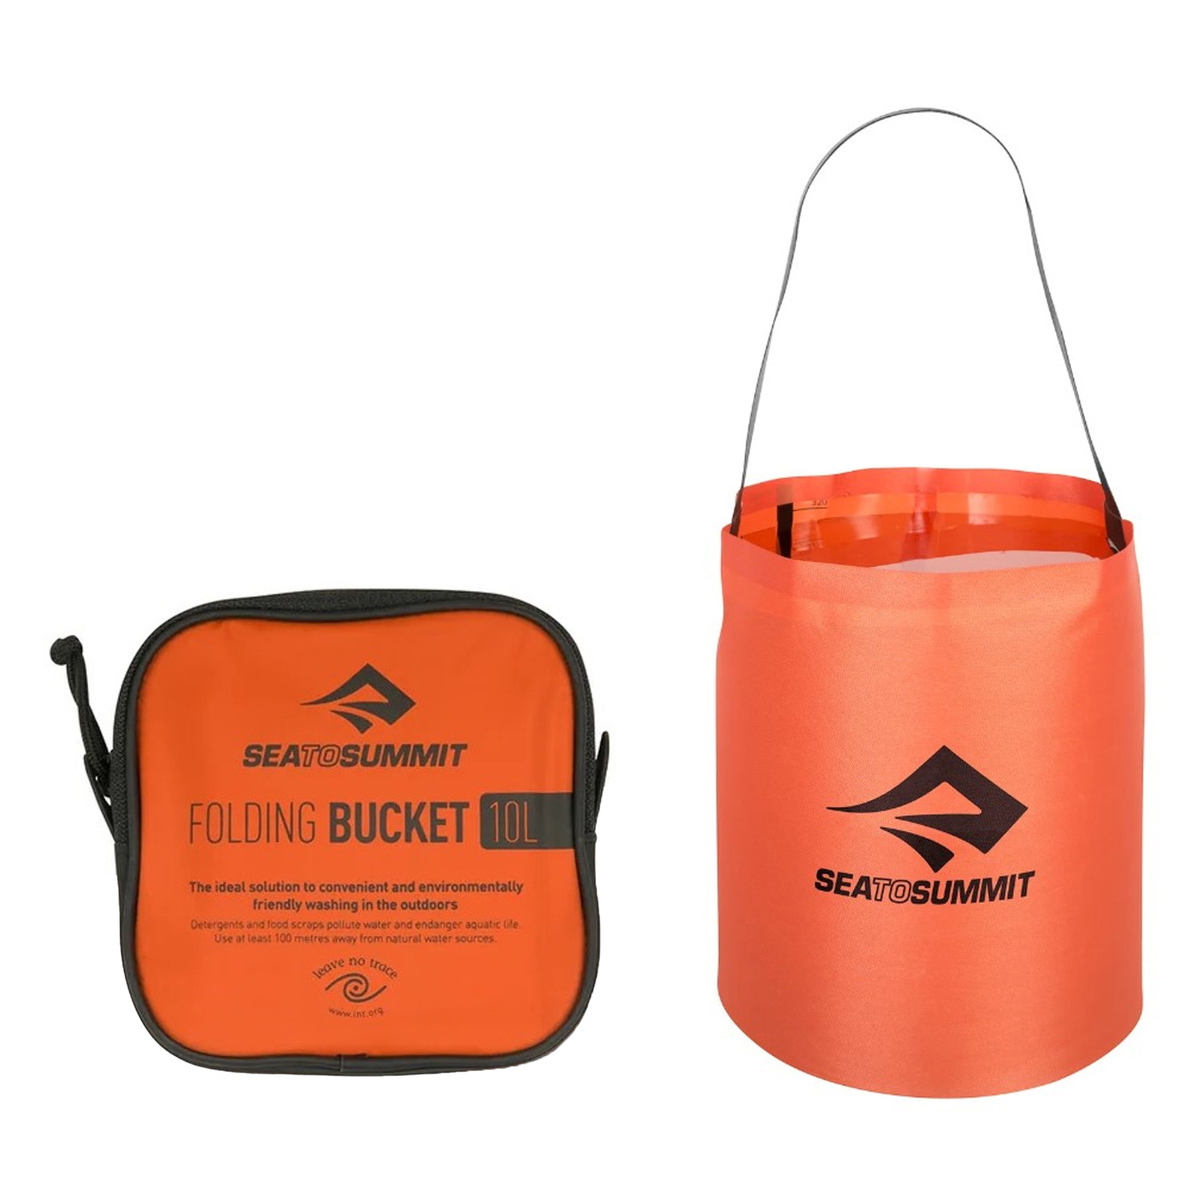 Sea to Summit Folding Bucket - Collapsible 10L bucket